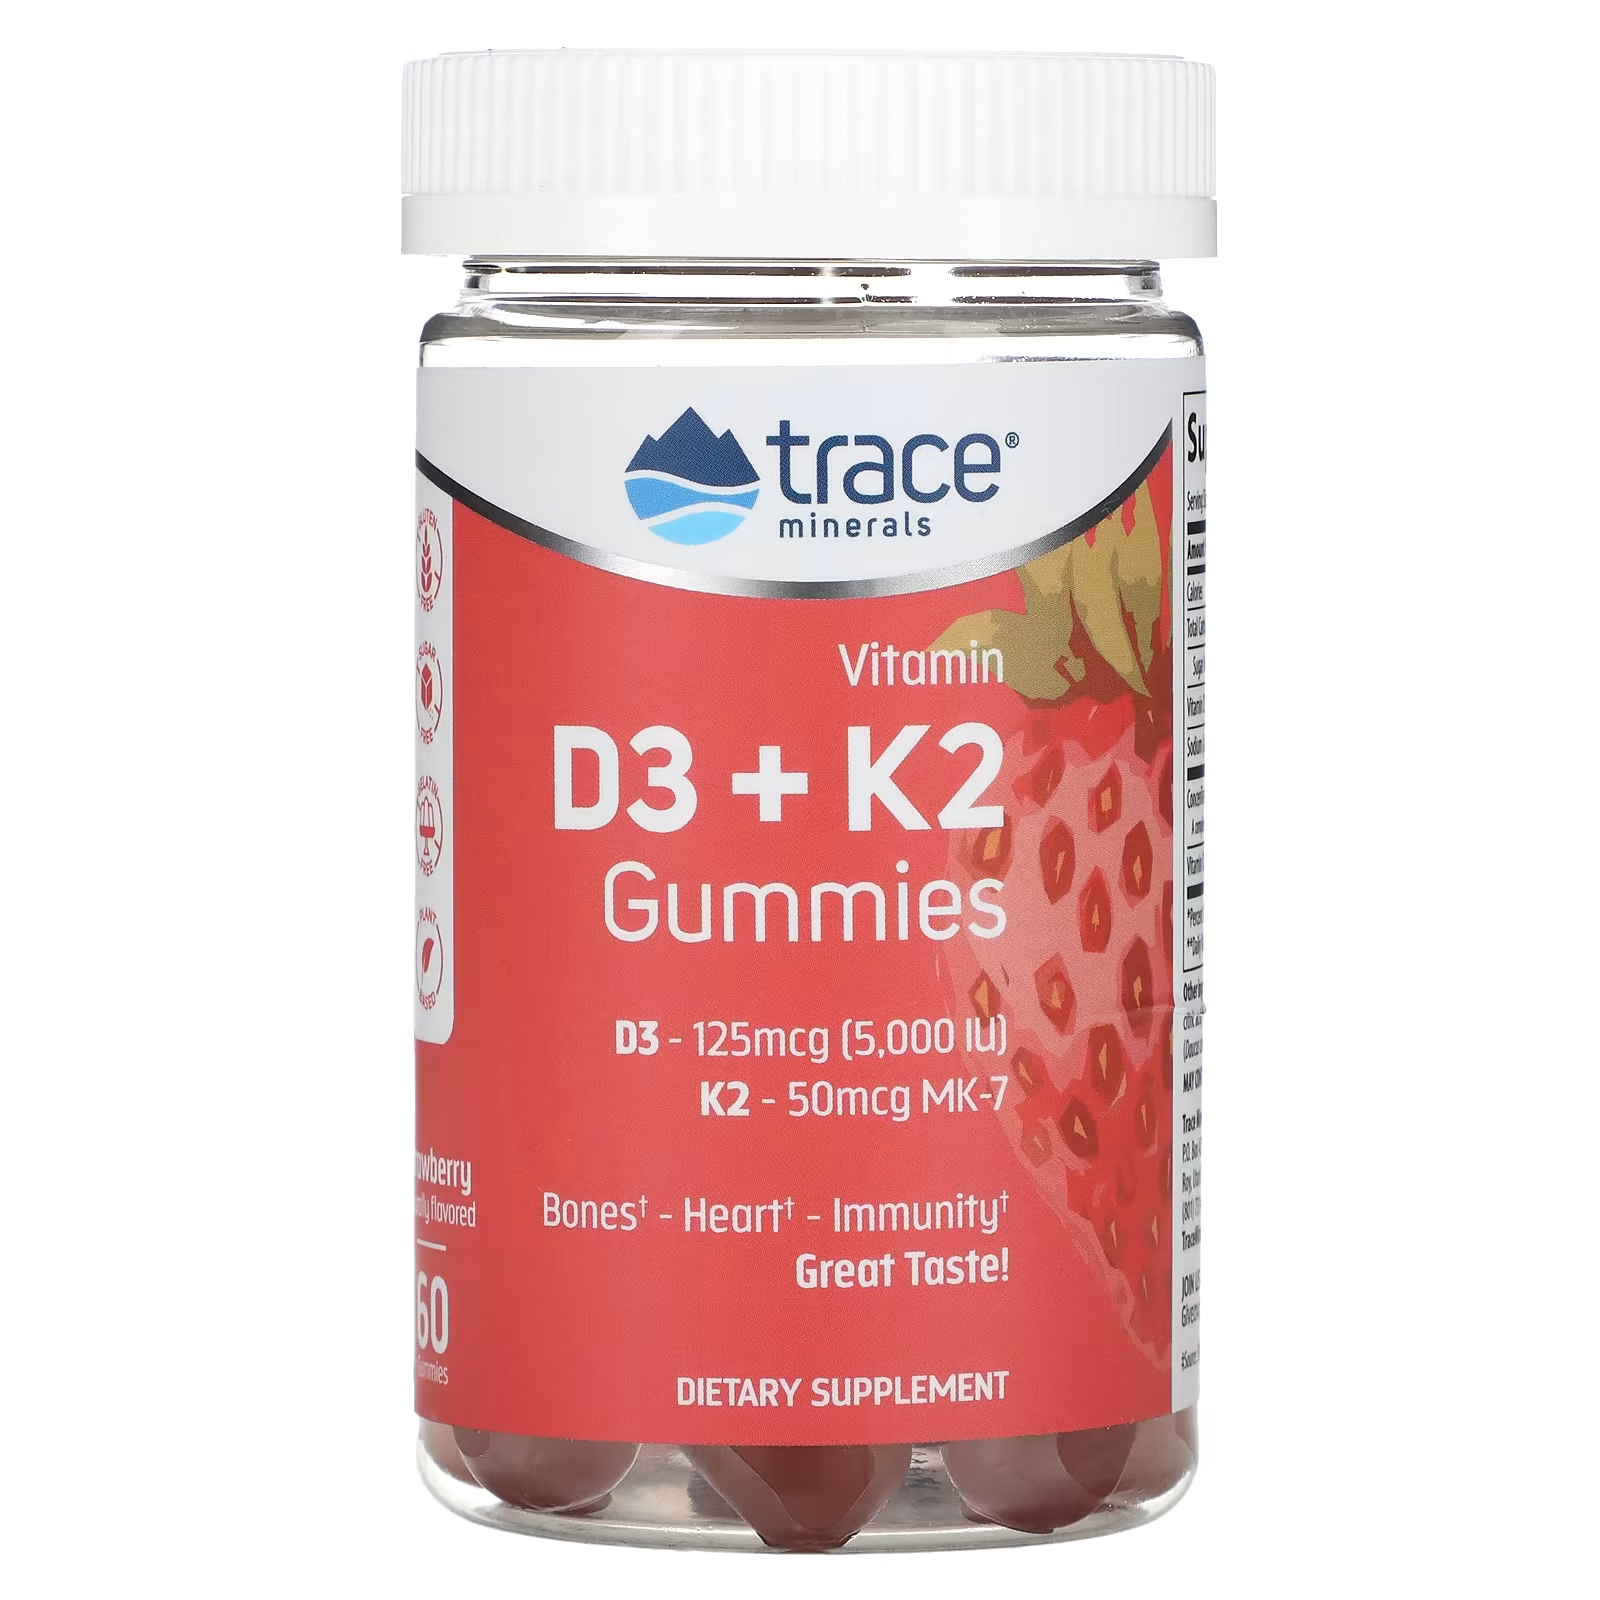 Жевательные конфеты Trace Minerals с витамином D3 + K2 клубника, 60 таблеток жевательные конфеты trace minerals с витамином d3 k2 клубника 60 таблеток